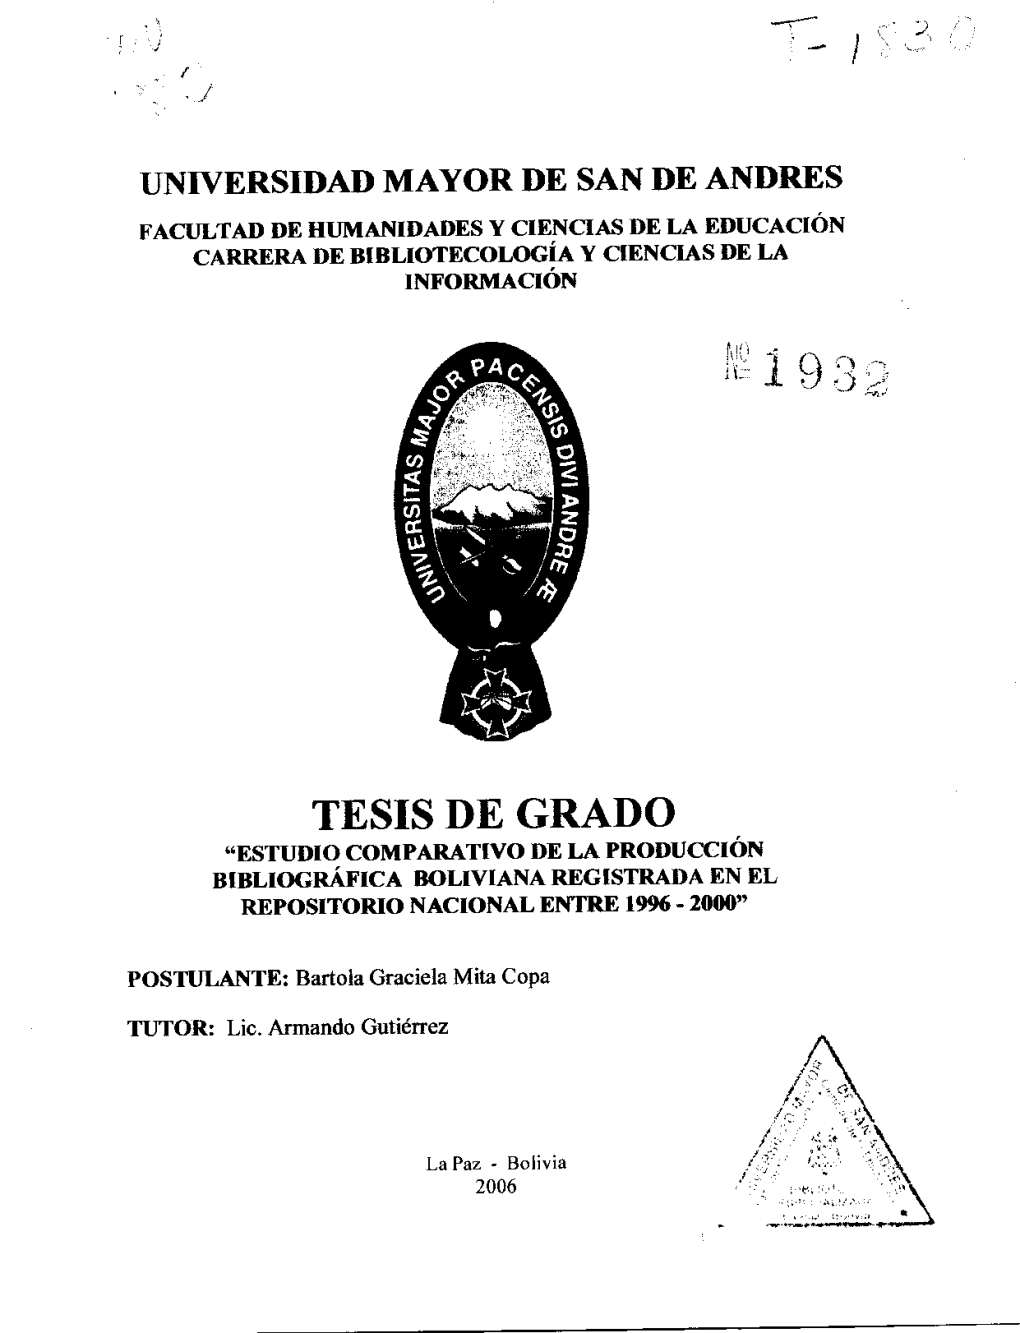 Tesis De Grado "Estudio Comparativo De La Producción Bibliográfica Boliviana Registrada En El Repositorio Nacional Entre 19% - 2000"